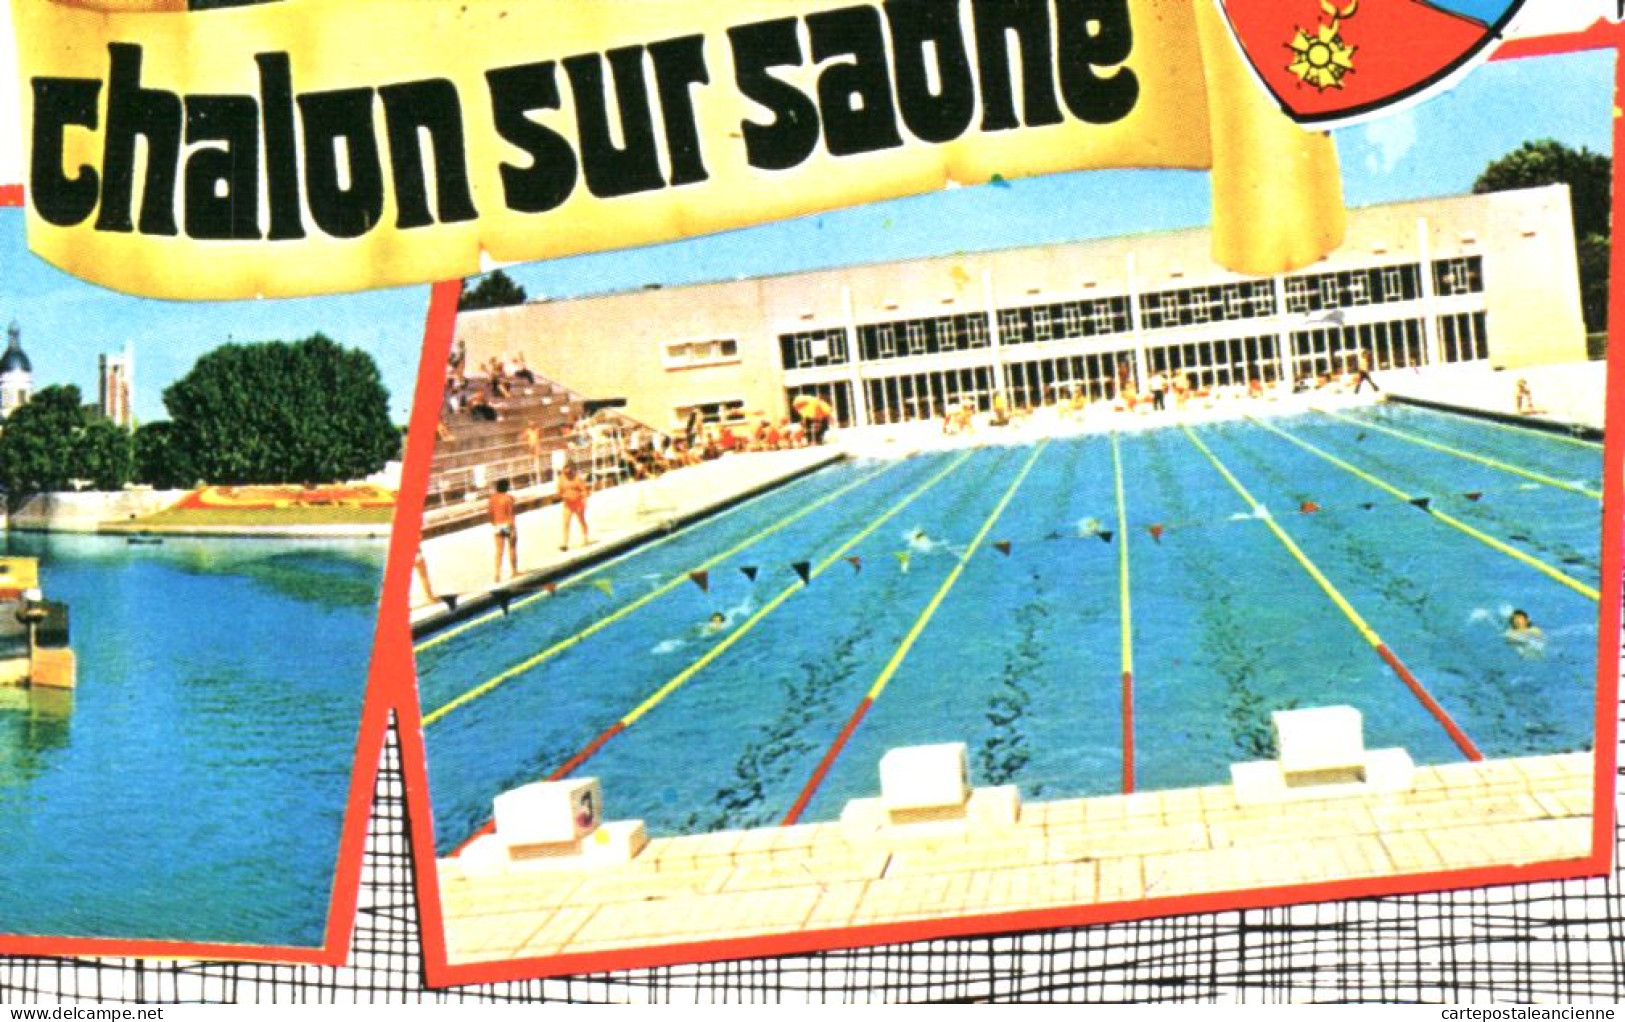 27111 / ⭐ CHALON-sur-SAONE 71-Saone Et Loire  Multivues Dont Piscine Flamme Poste Ville Editions COMBIER - Chalon Sur Saone